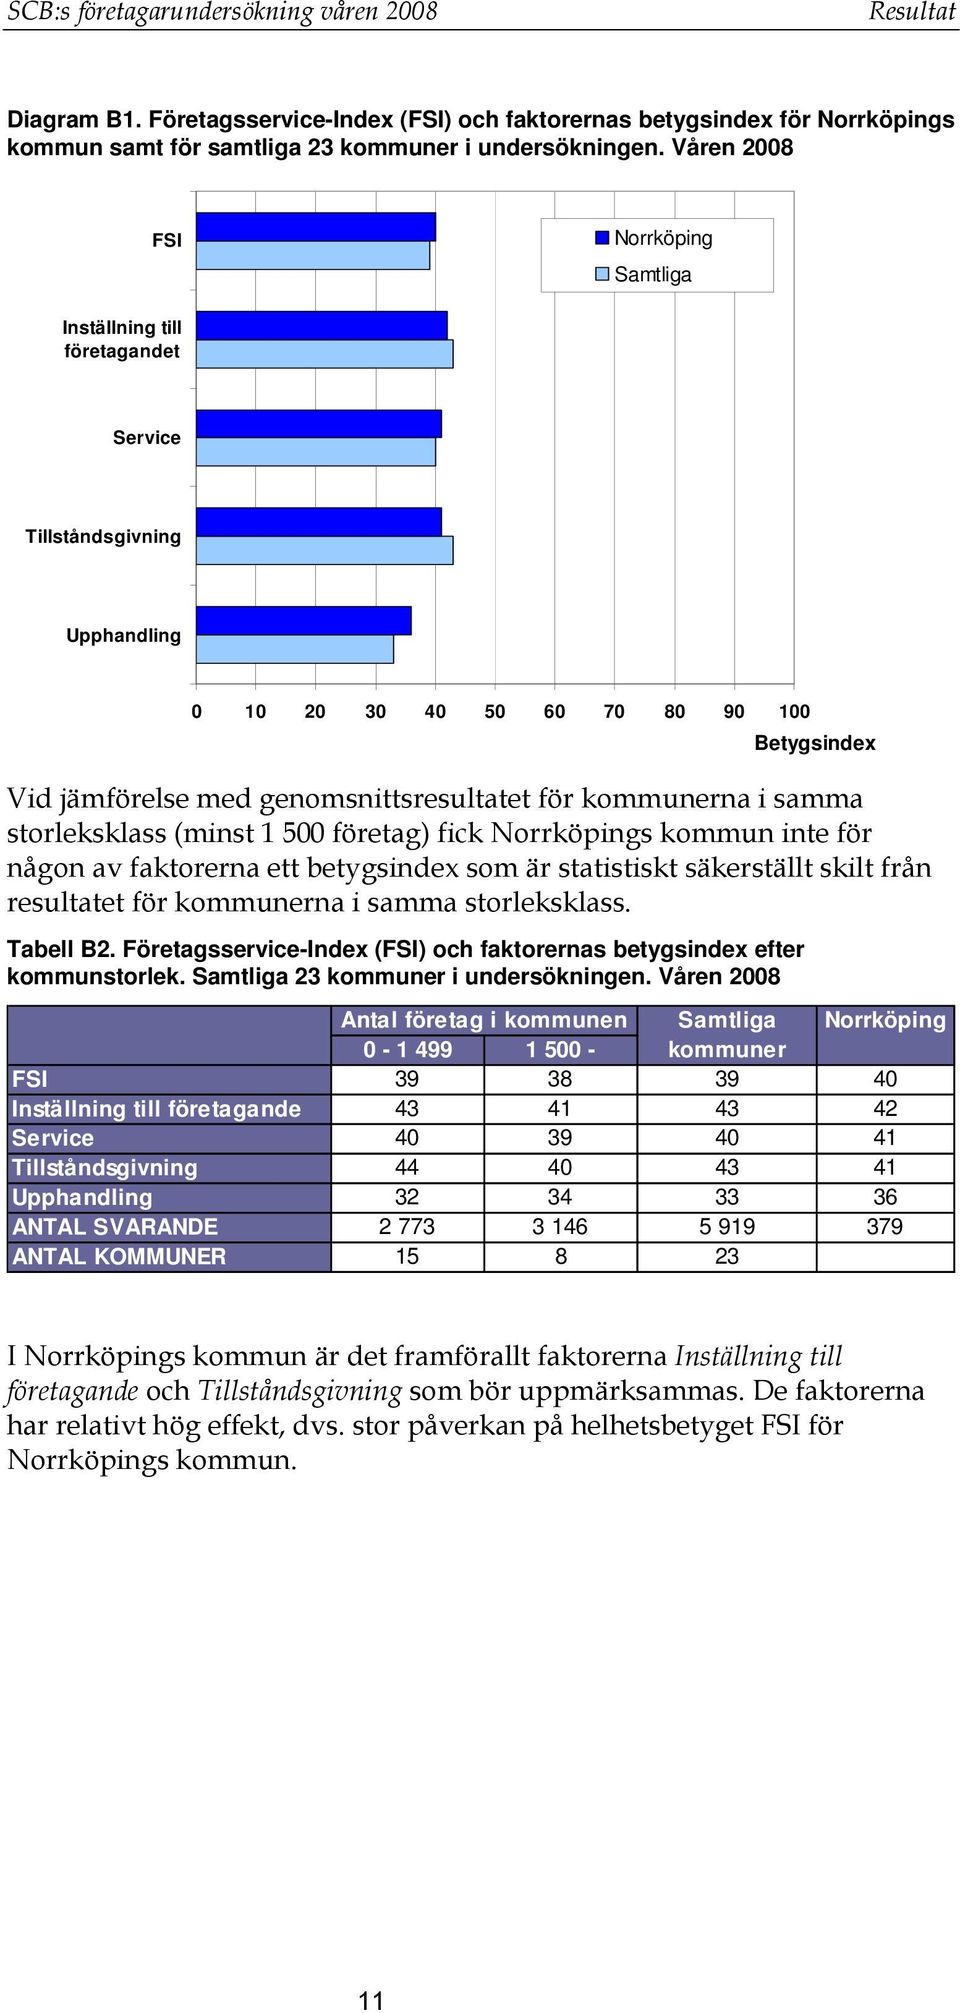 kommunerna i samma storleksklass (minst 1 500 företag) fick Norrköpings kommun inte för någon av faktorerna ett betygsindex som är statistiskt säkerställt skilt från resultatet för kommunerna i samma